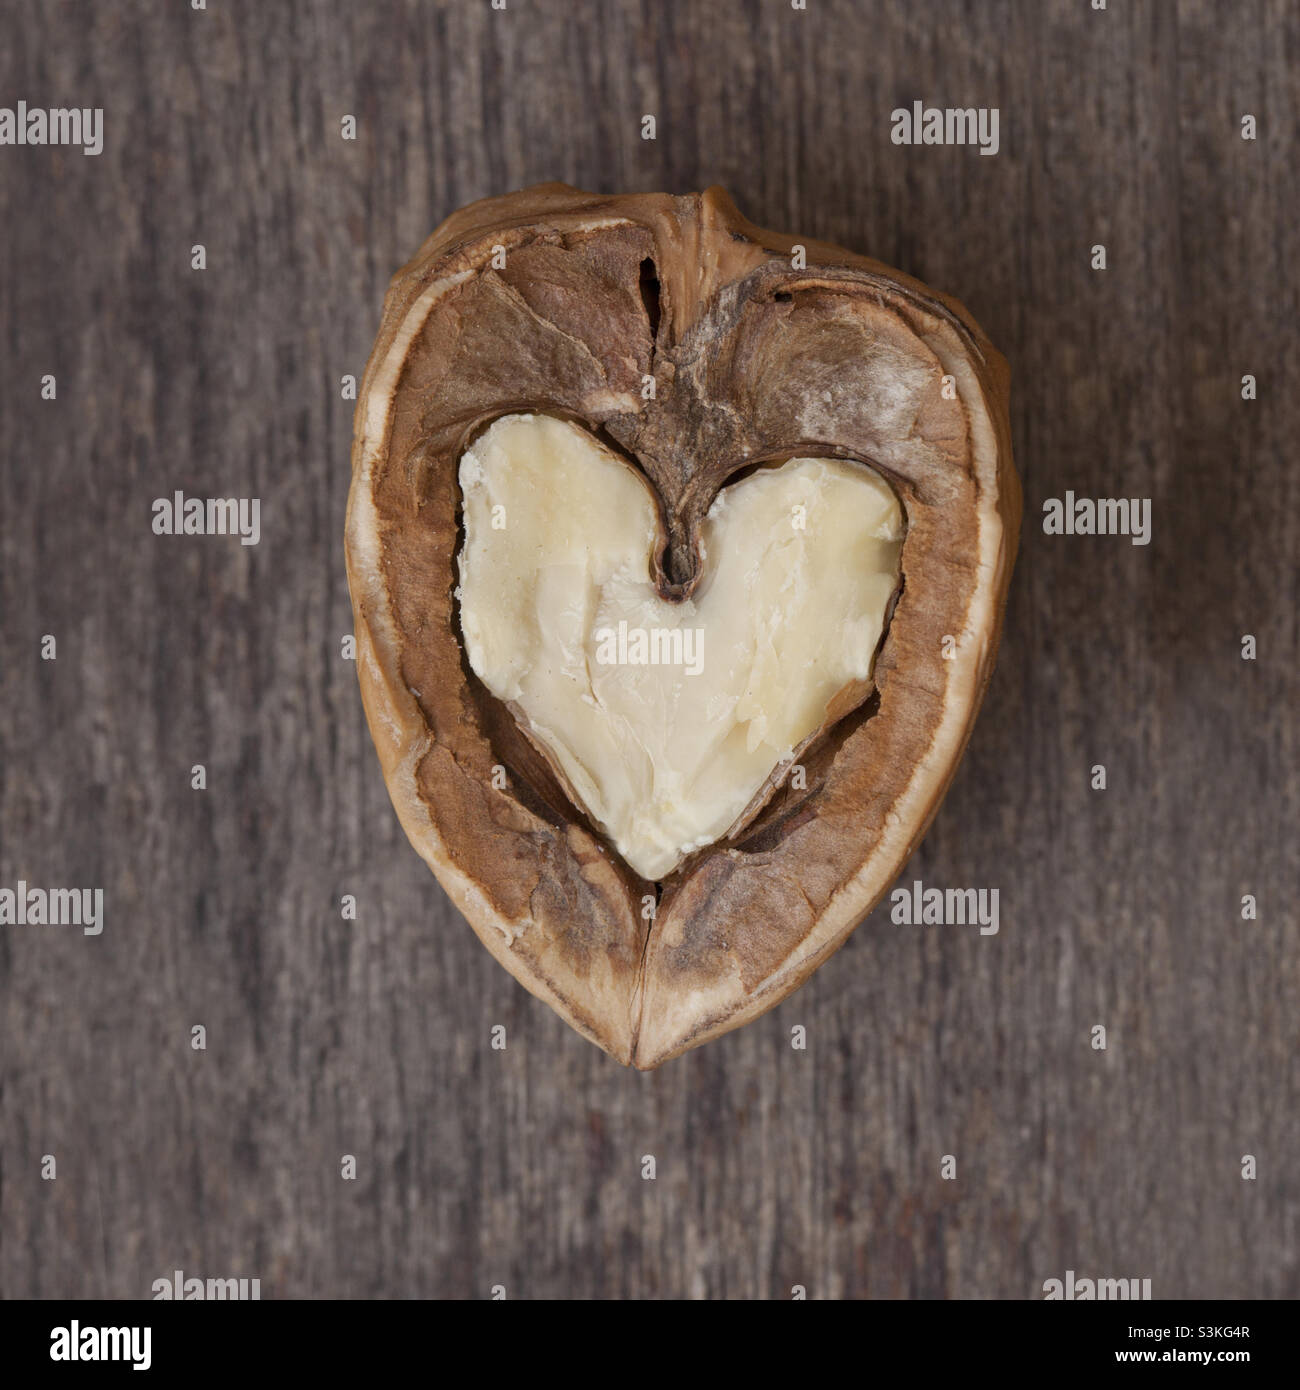 Love nuts. Heart shaped walnut Stock Photo